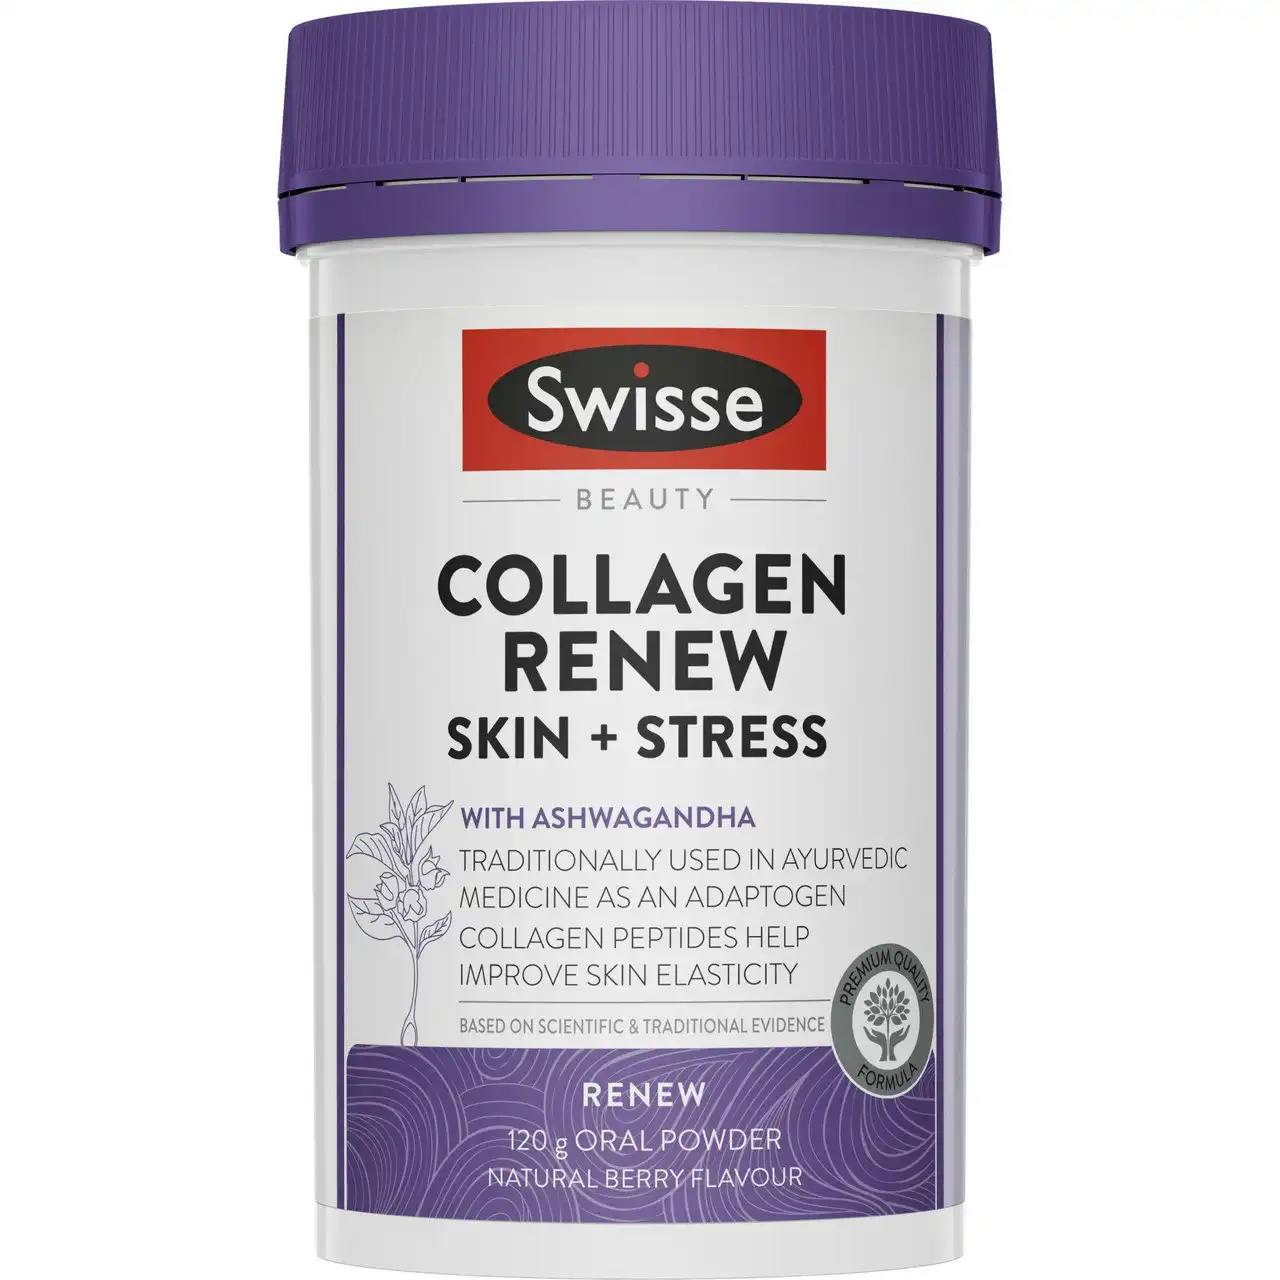 Swisse Beauty Collagen Renew Skin + Stress 120g Powder